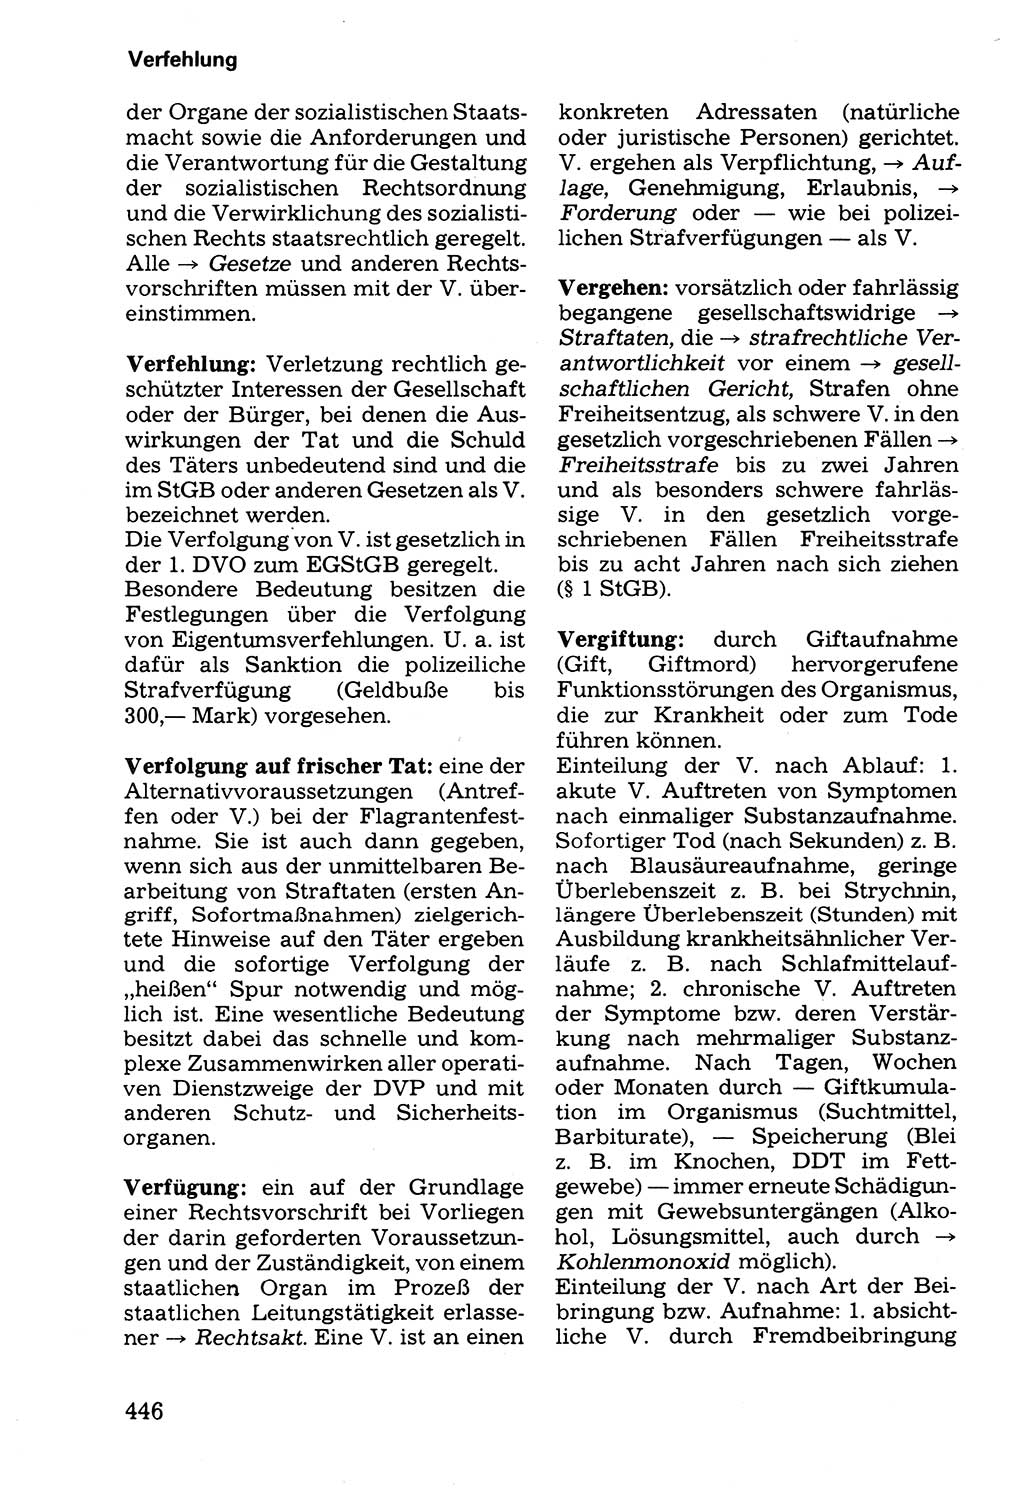 Wörterbuch der sozialistischen Kriminalistik [Deutsche Demokratische Republik (DDR)] 1981, Seite 446 (Wb. soz. Krim. DDR 1981, S. 446)